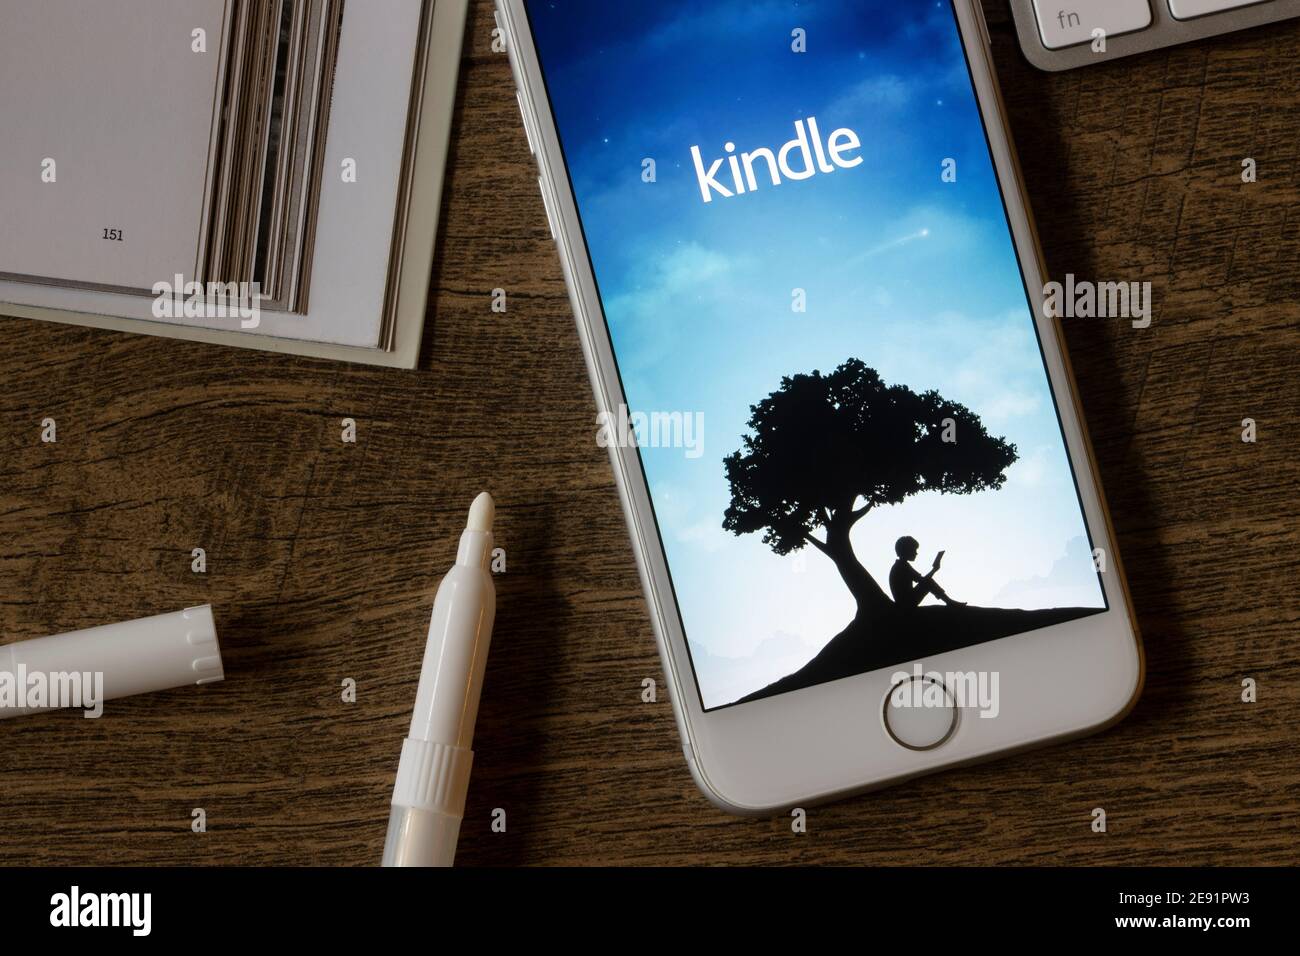 La pagina di benvenuto dell'app Amazon Kindle per dispositivi mobili viene visualizzata su un iPhone il 1° febbraio 2021. L'applicazione consente agli utenti di leggere gli eBook in movimento. Foto Stock